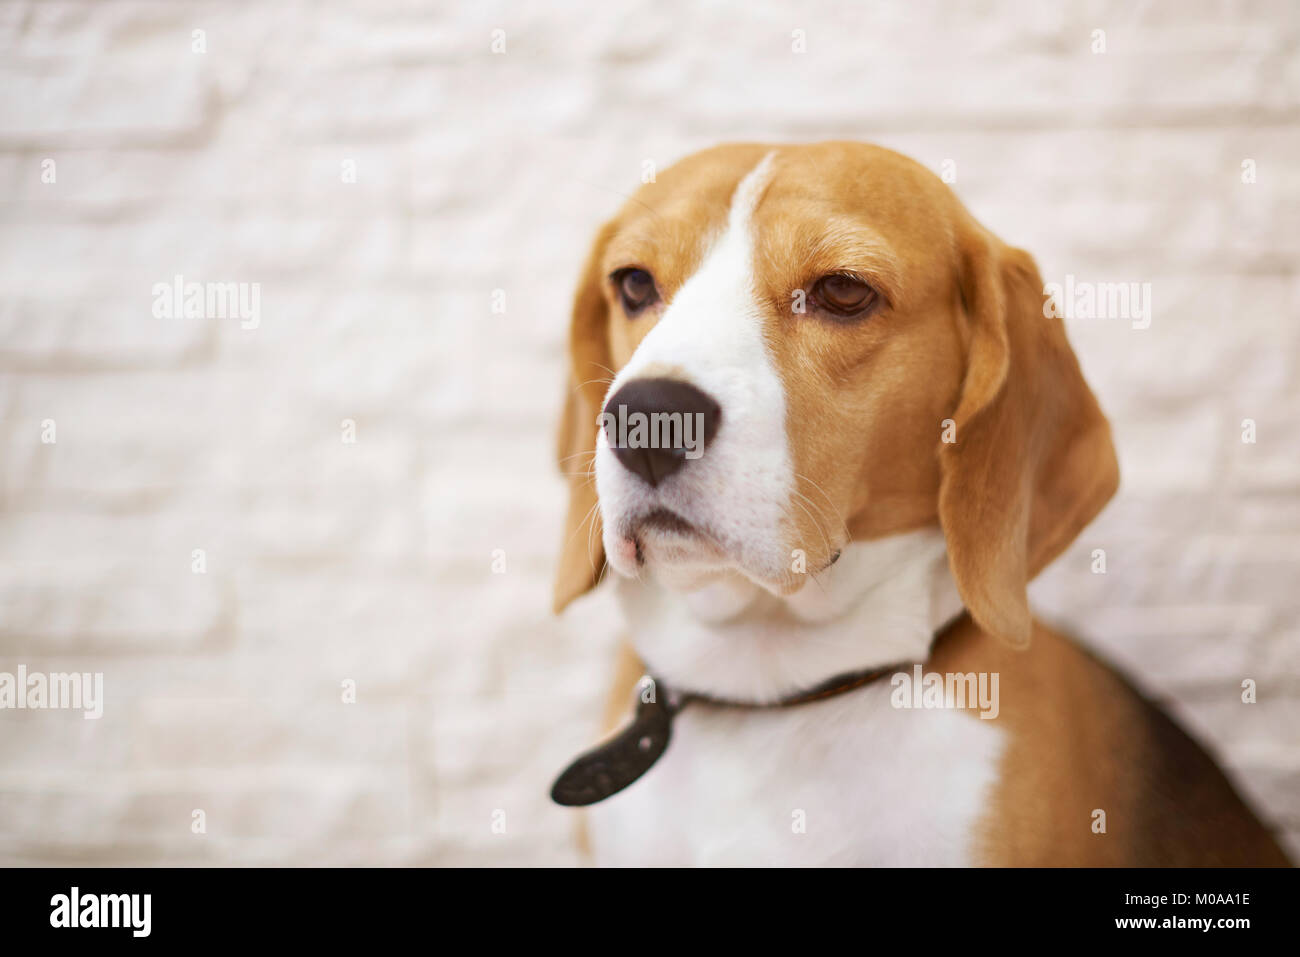 Portrait of beagle dog on blurred stone white brick background Stock Photo